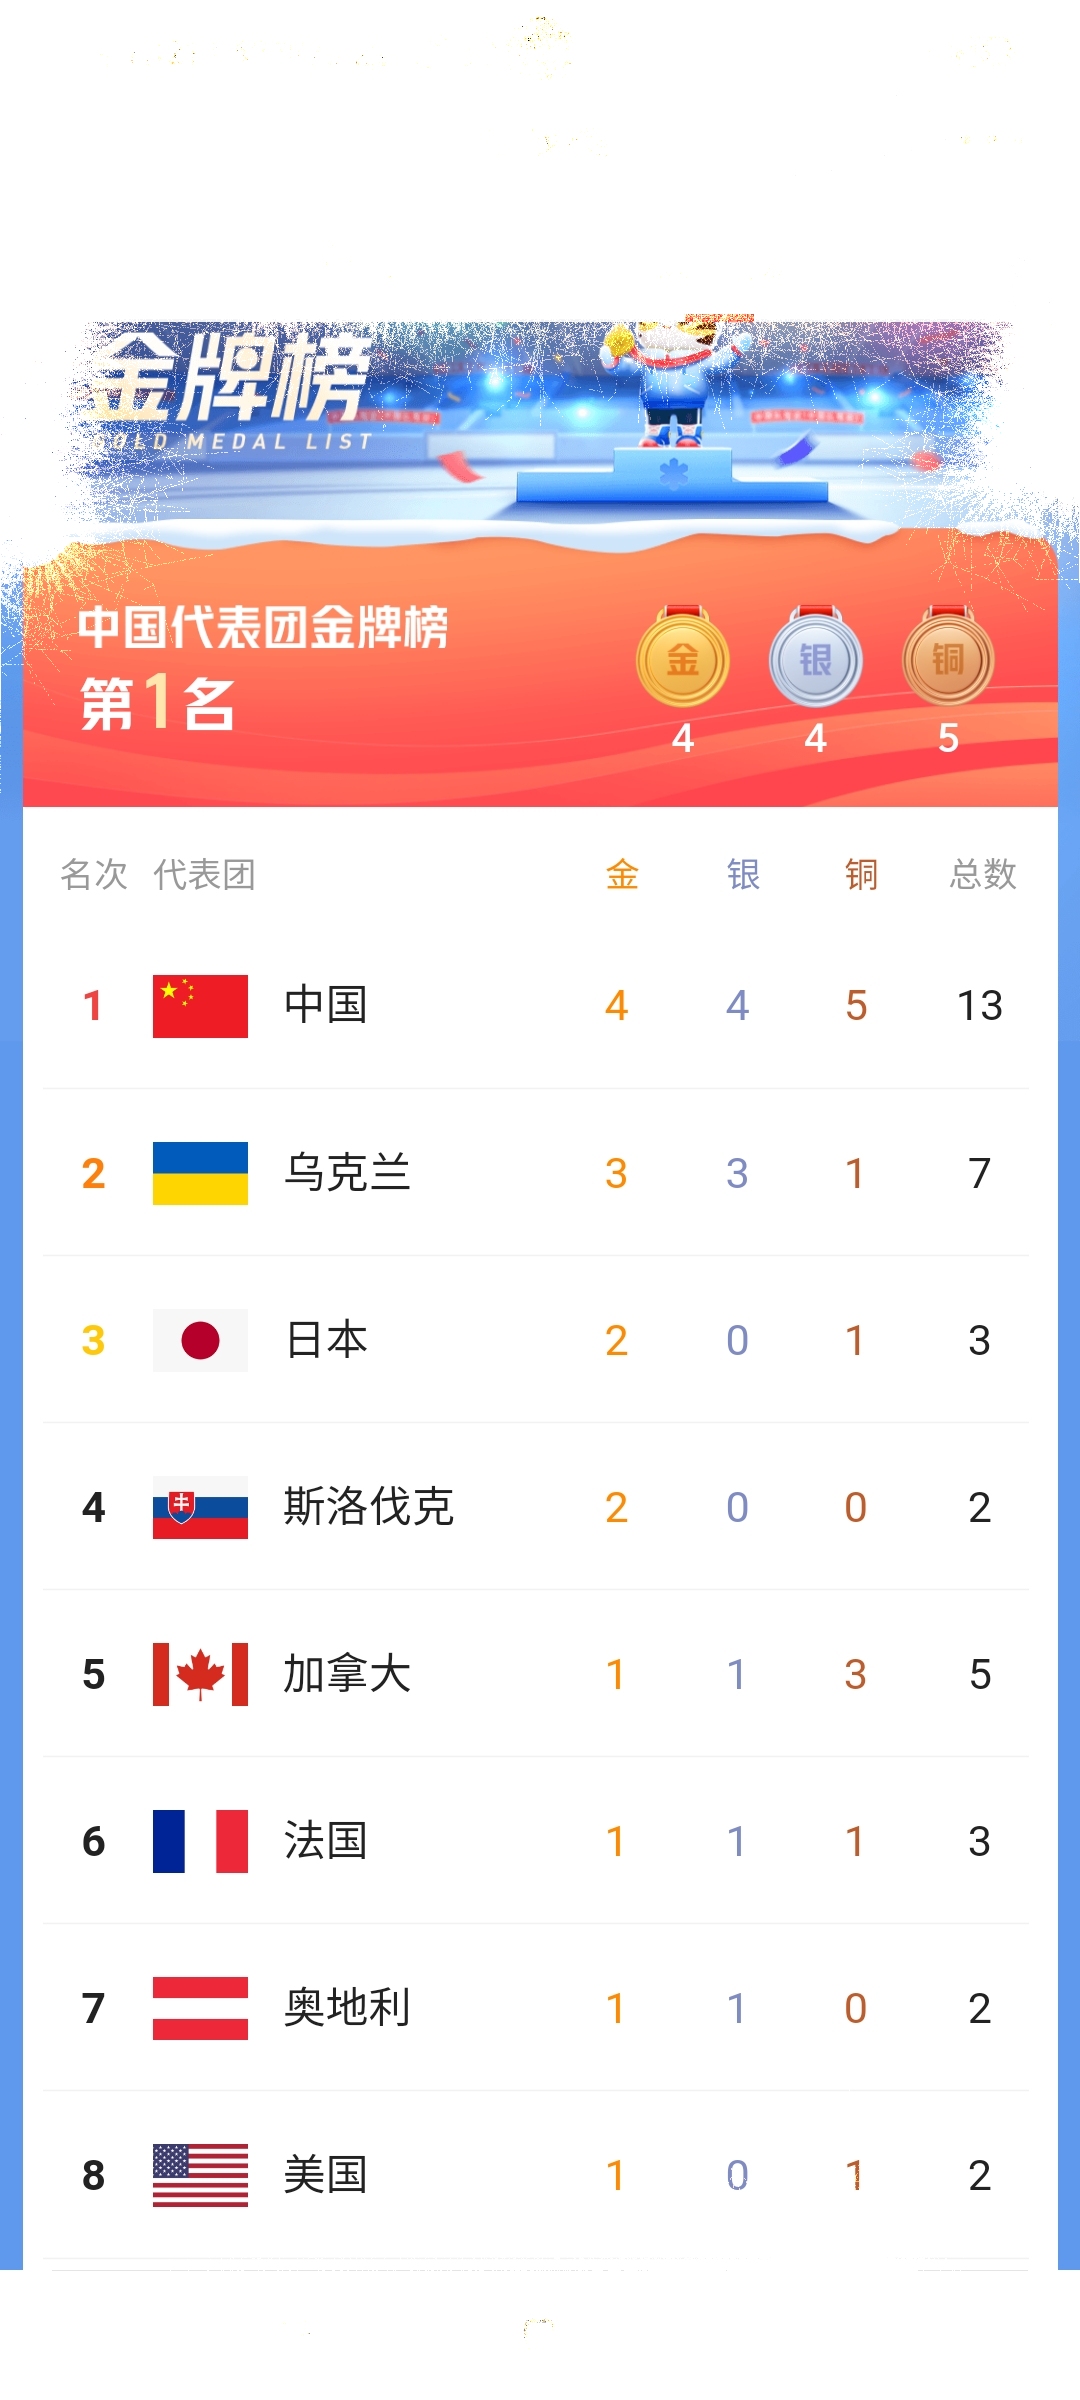 中国第一!2022北京冬残奥会最新奖牌榜